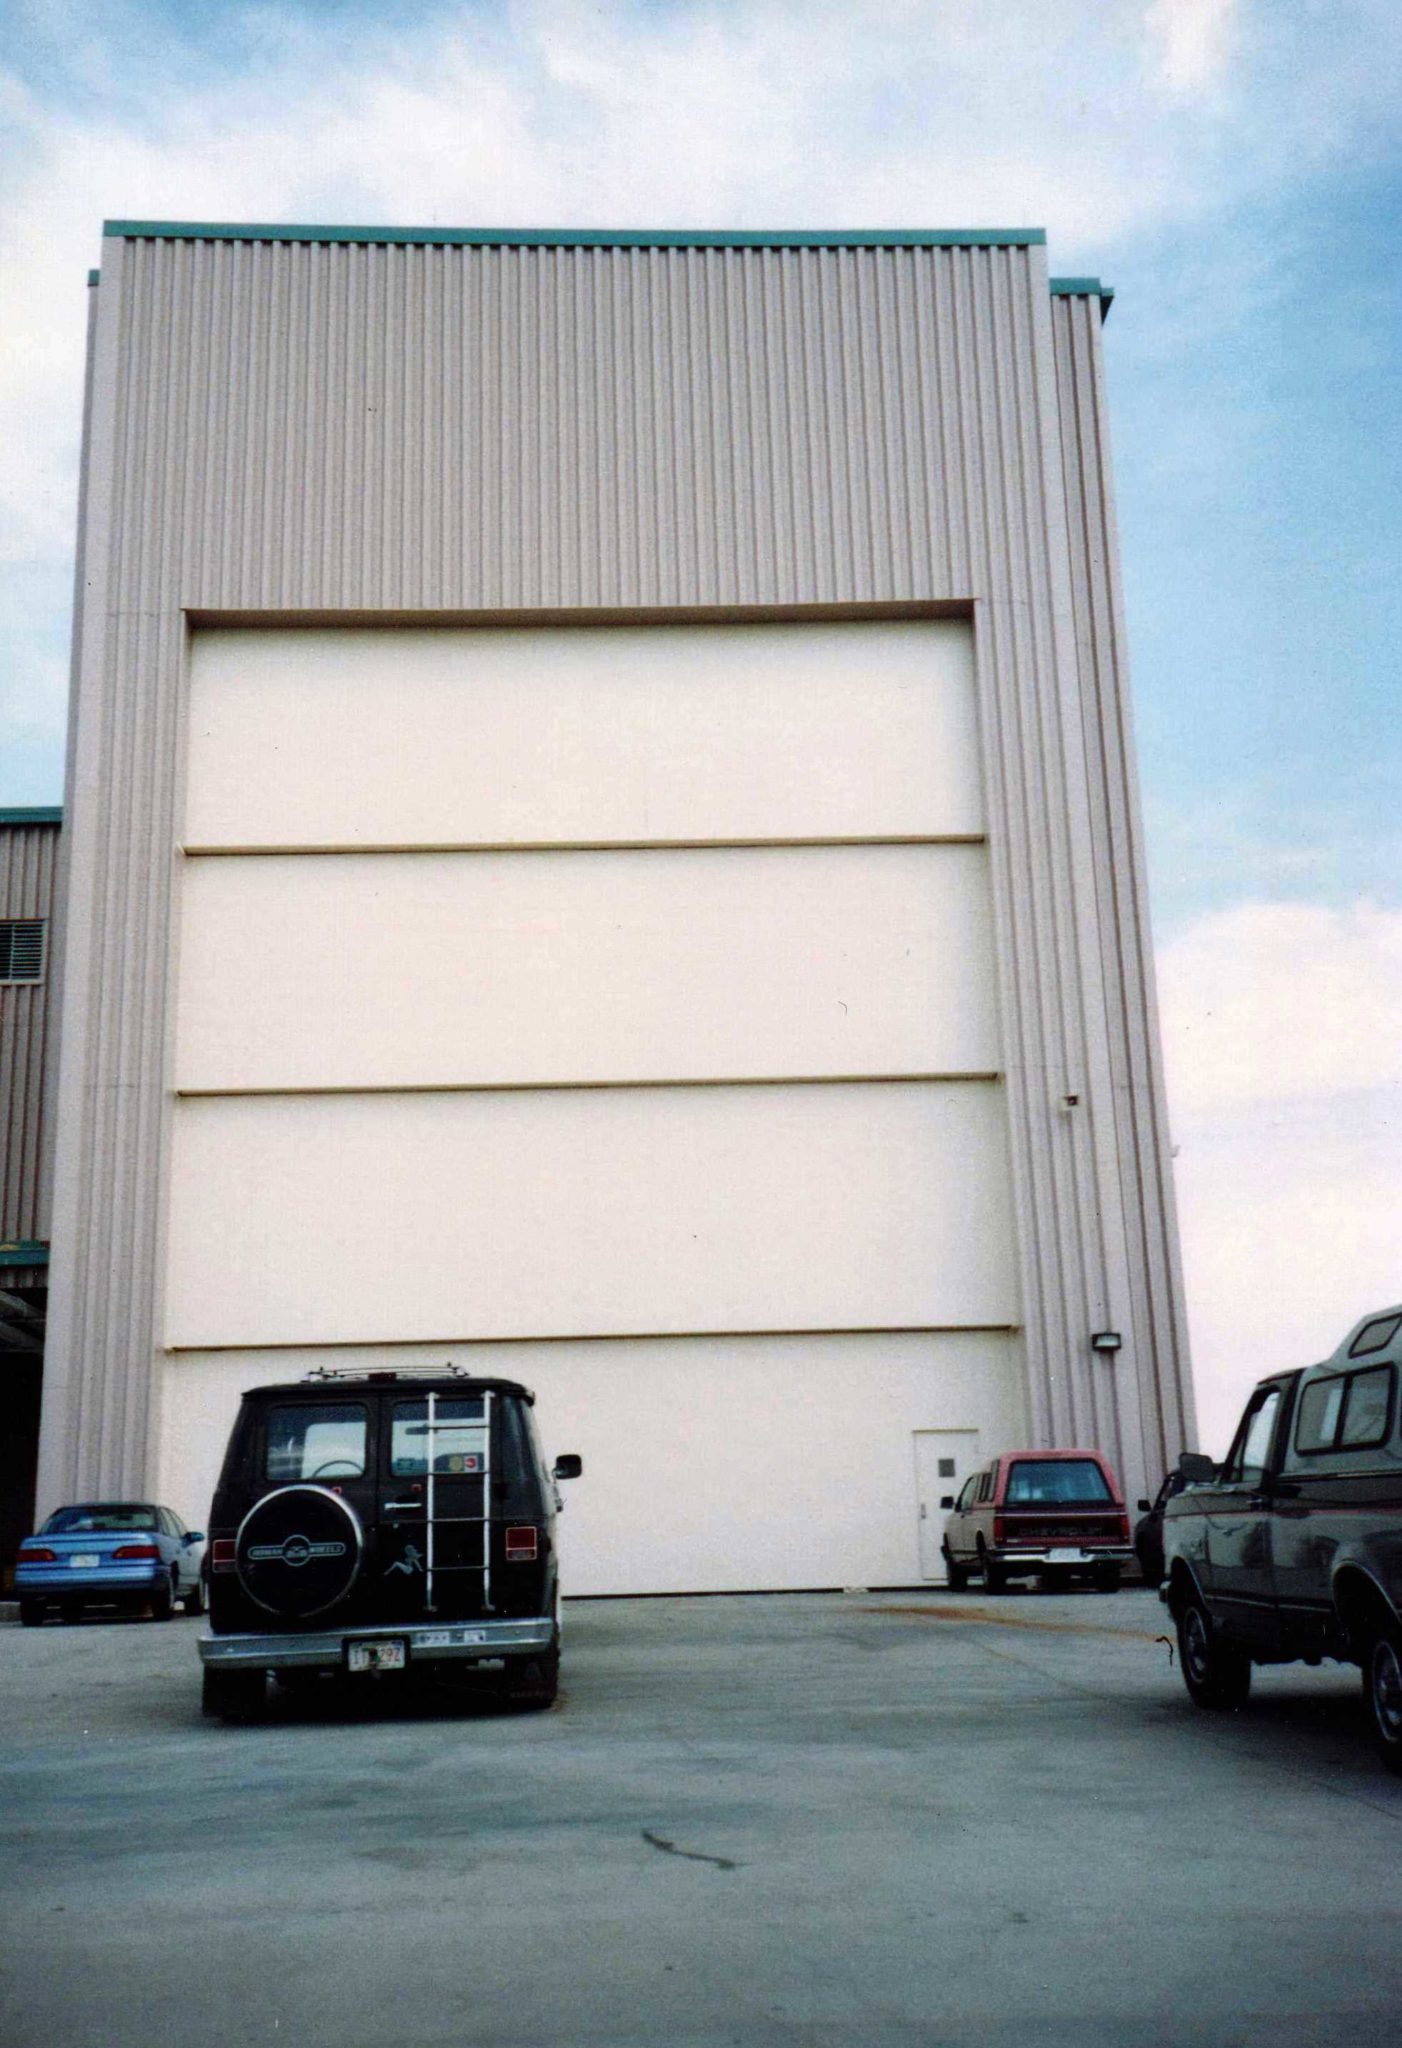 Vertical Lift Doors